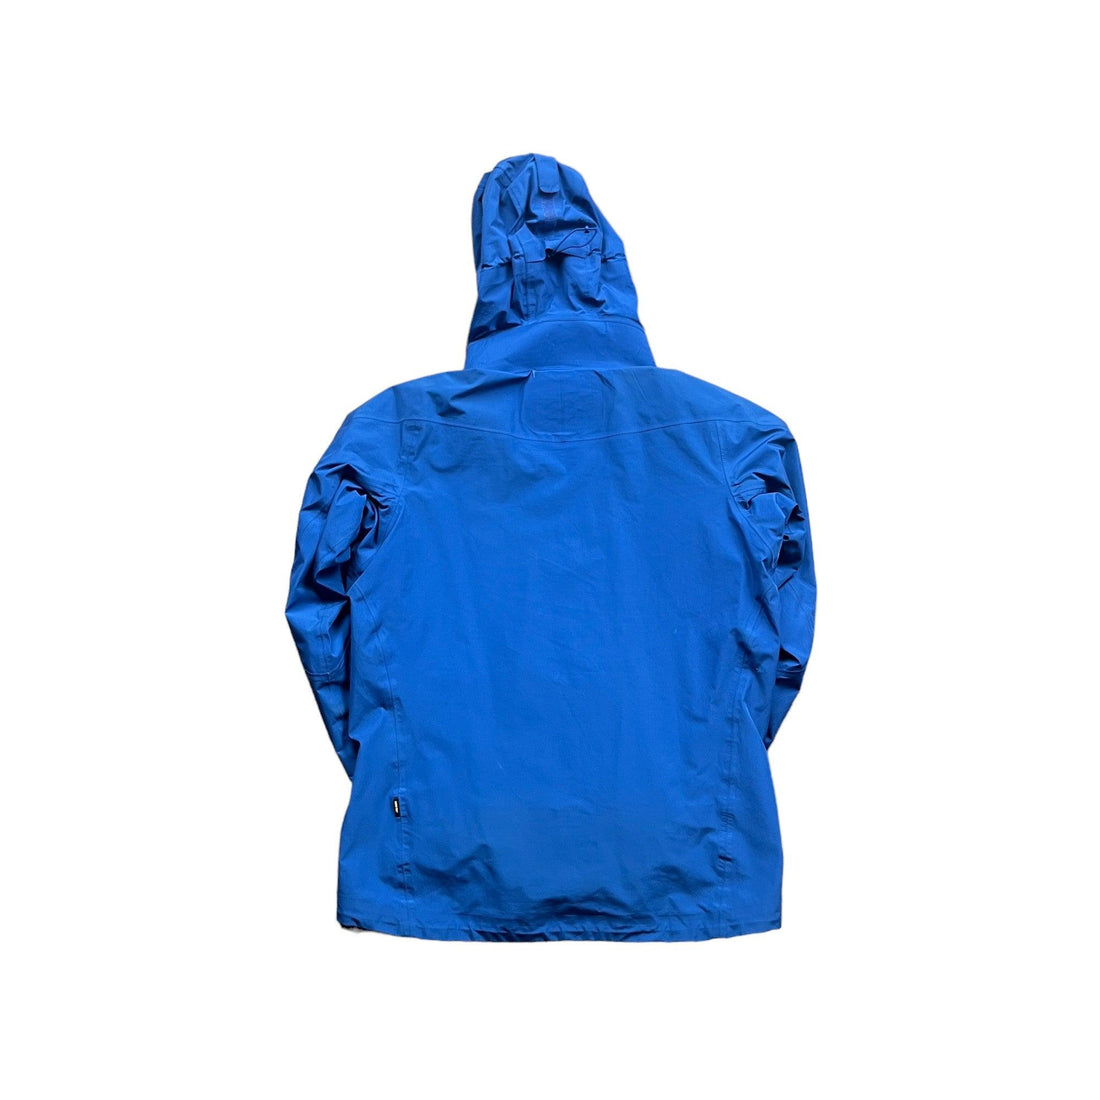 Vintage Blue Montbell Waterproof Jacket - Medium - The Streetwear Studio